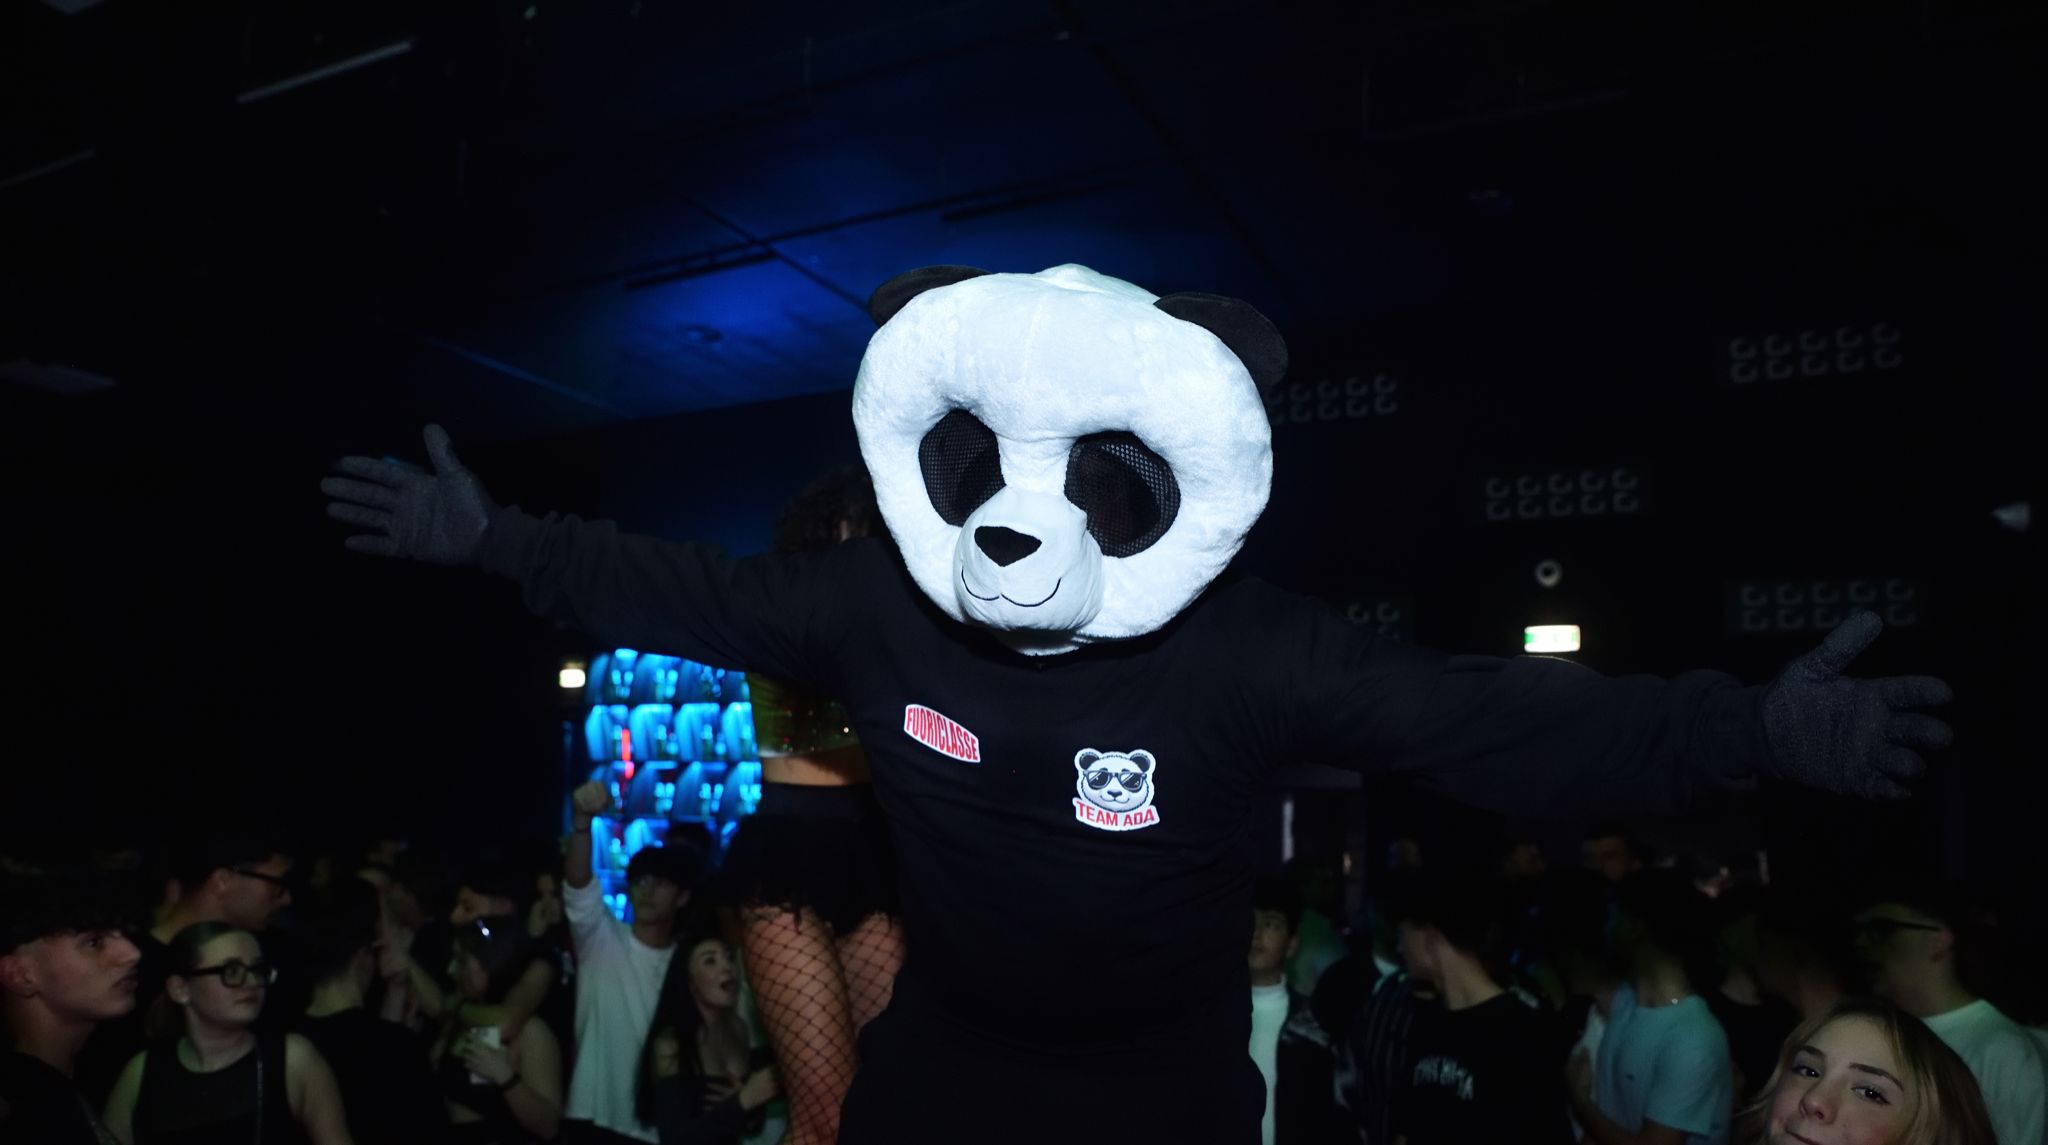 Il Team ADA: Una vera Rivoluzione del Divertimento Campano con la Mascotte Panda ADA